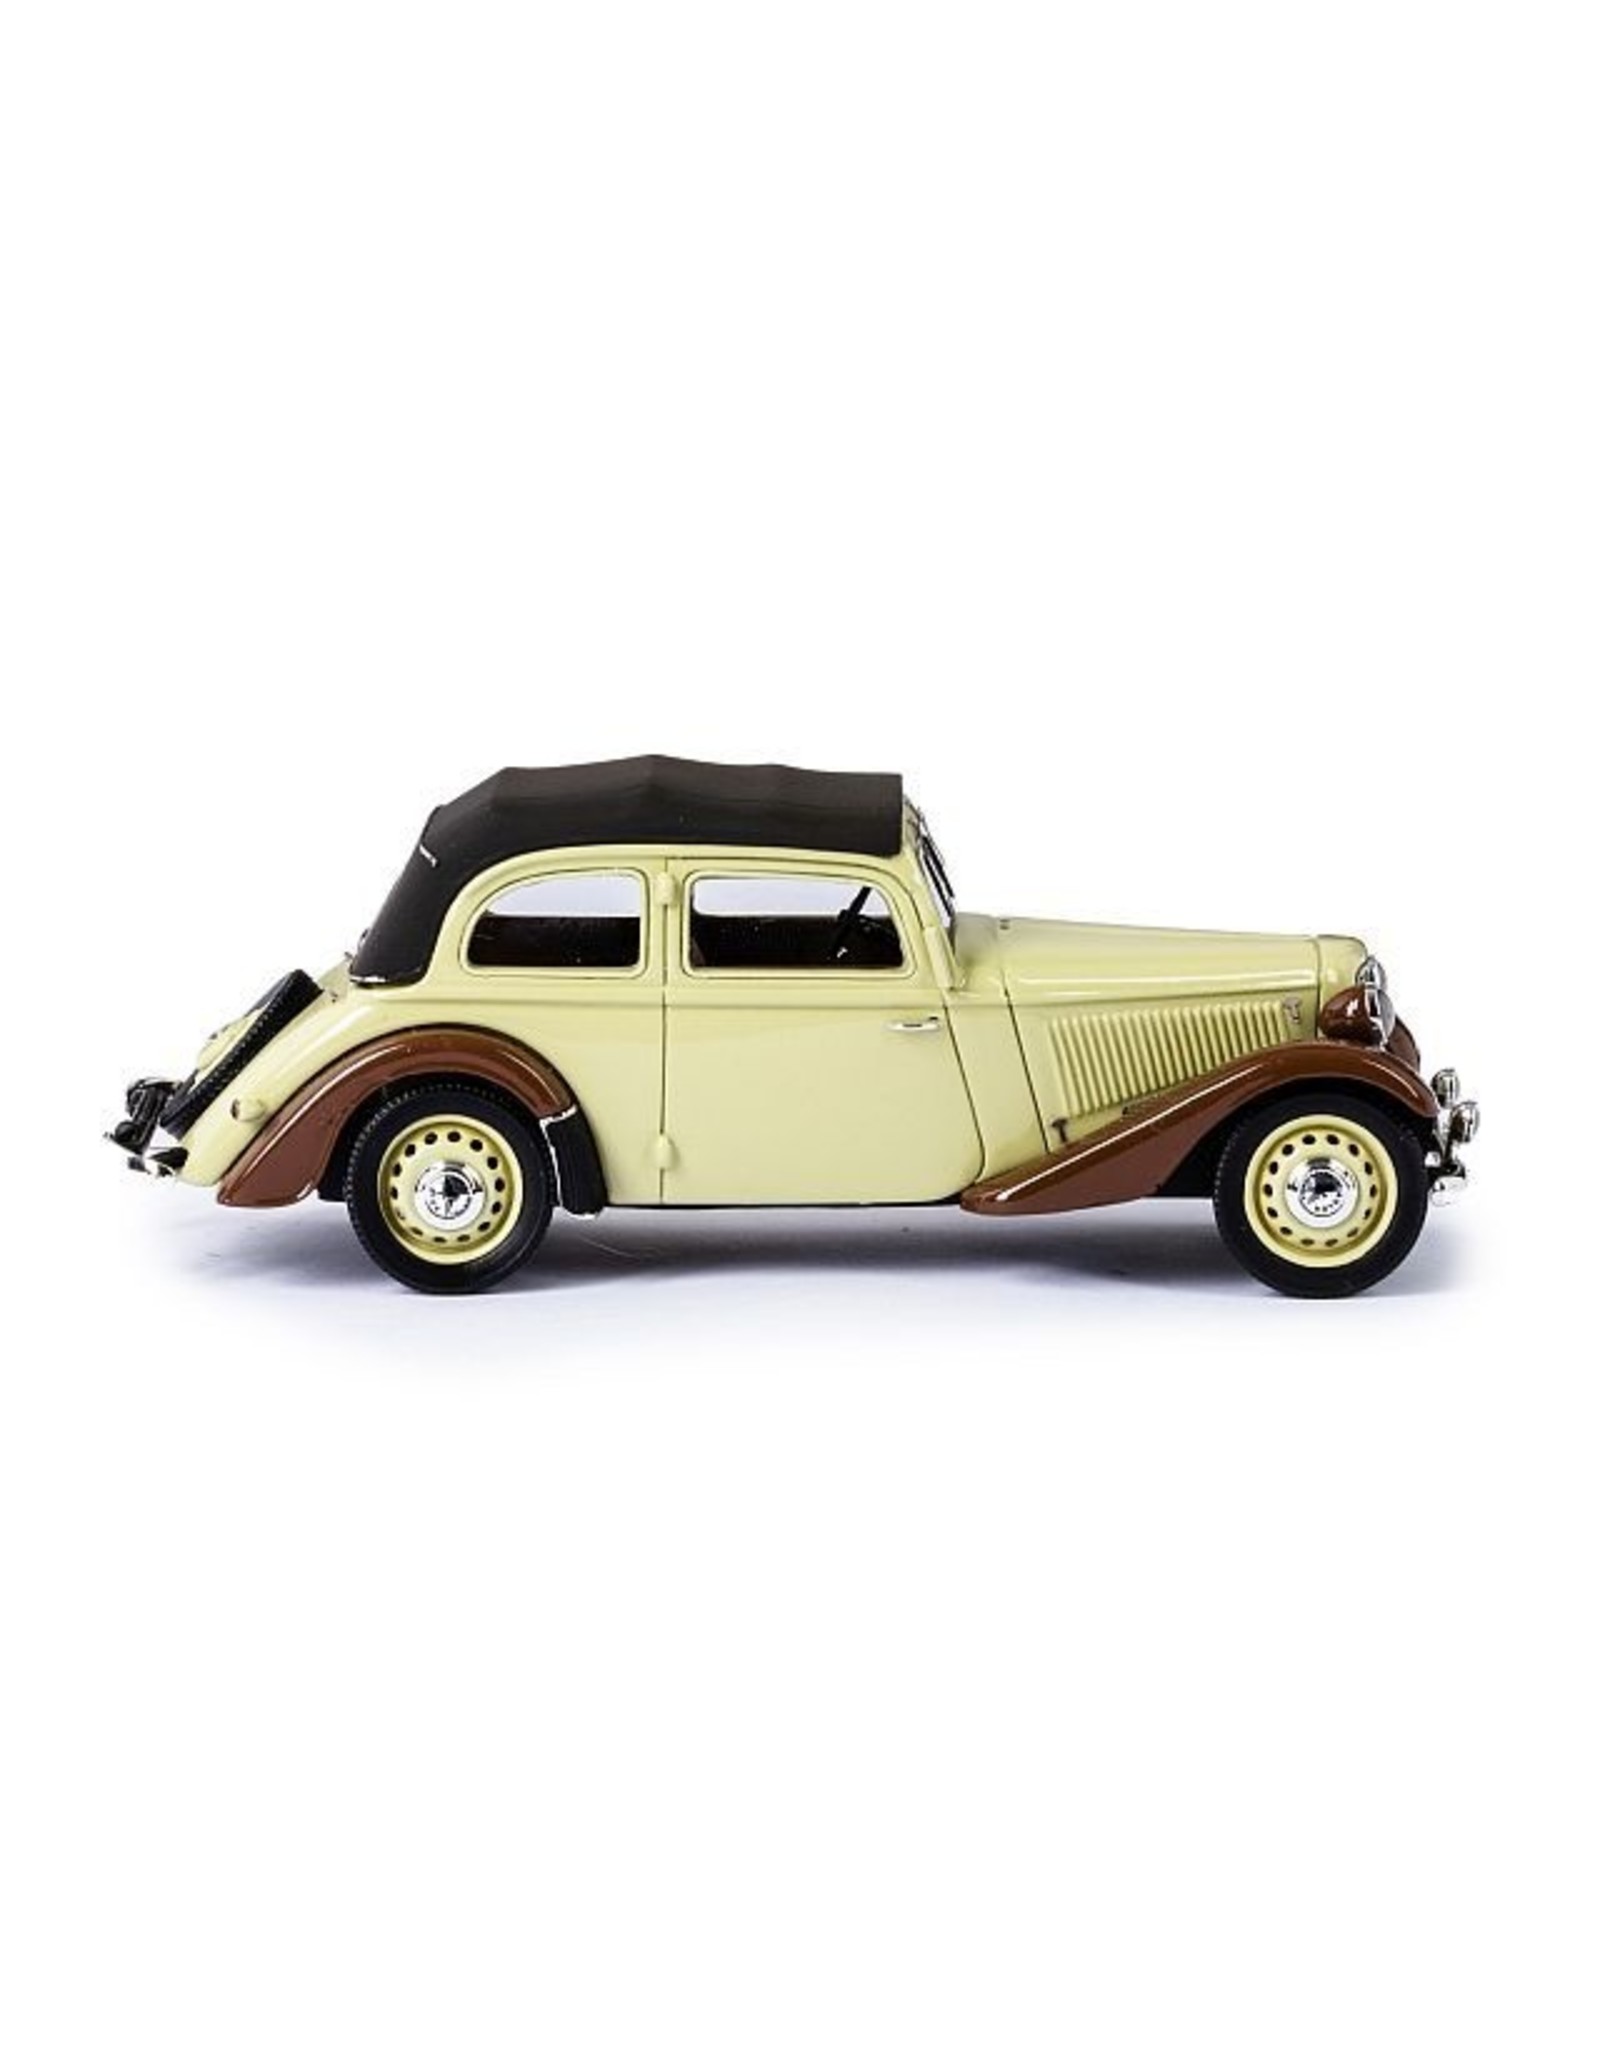 Adler Adler Trumpf Junior cabrio-limousine 2-door(closed top)1934-41.